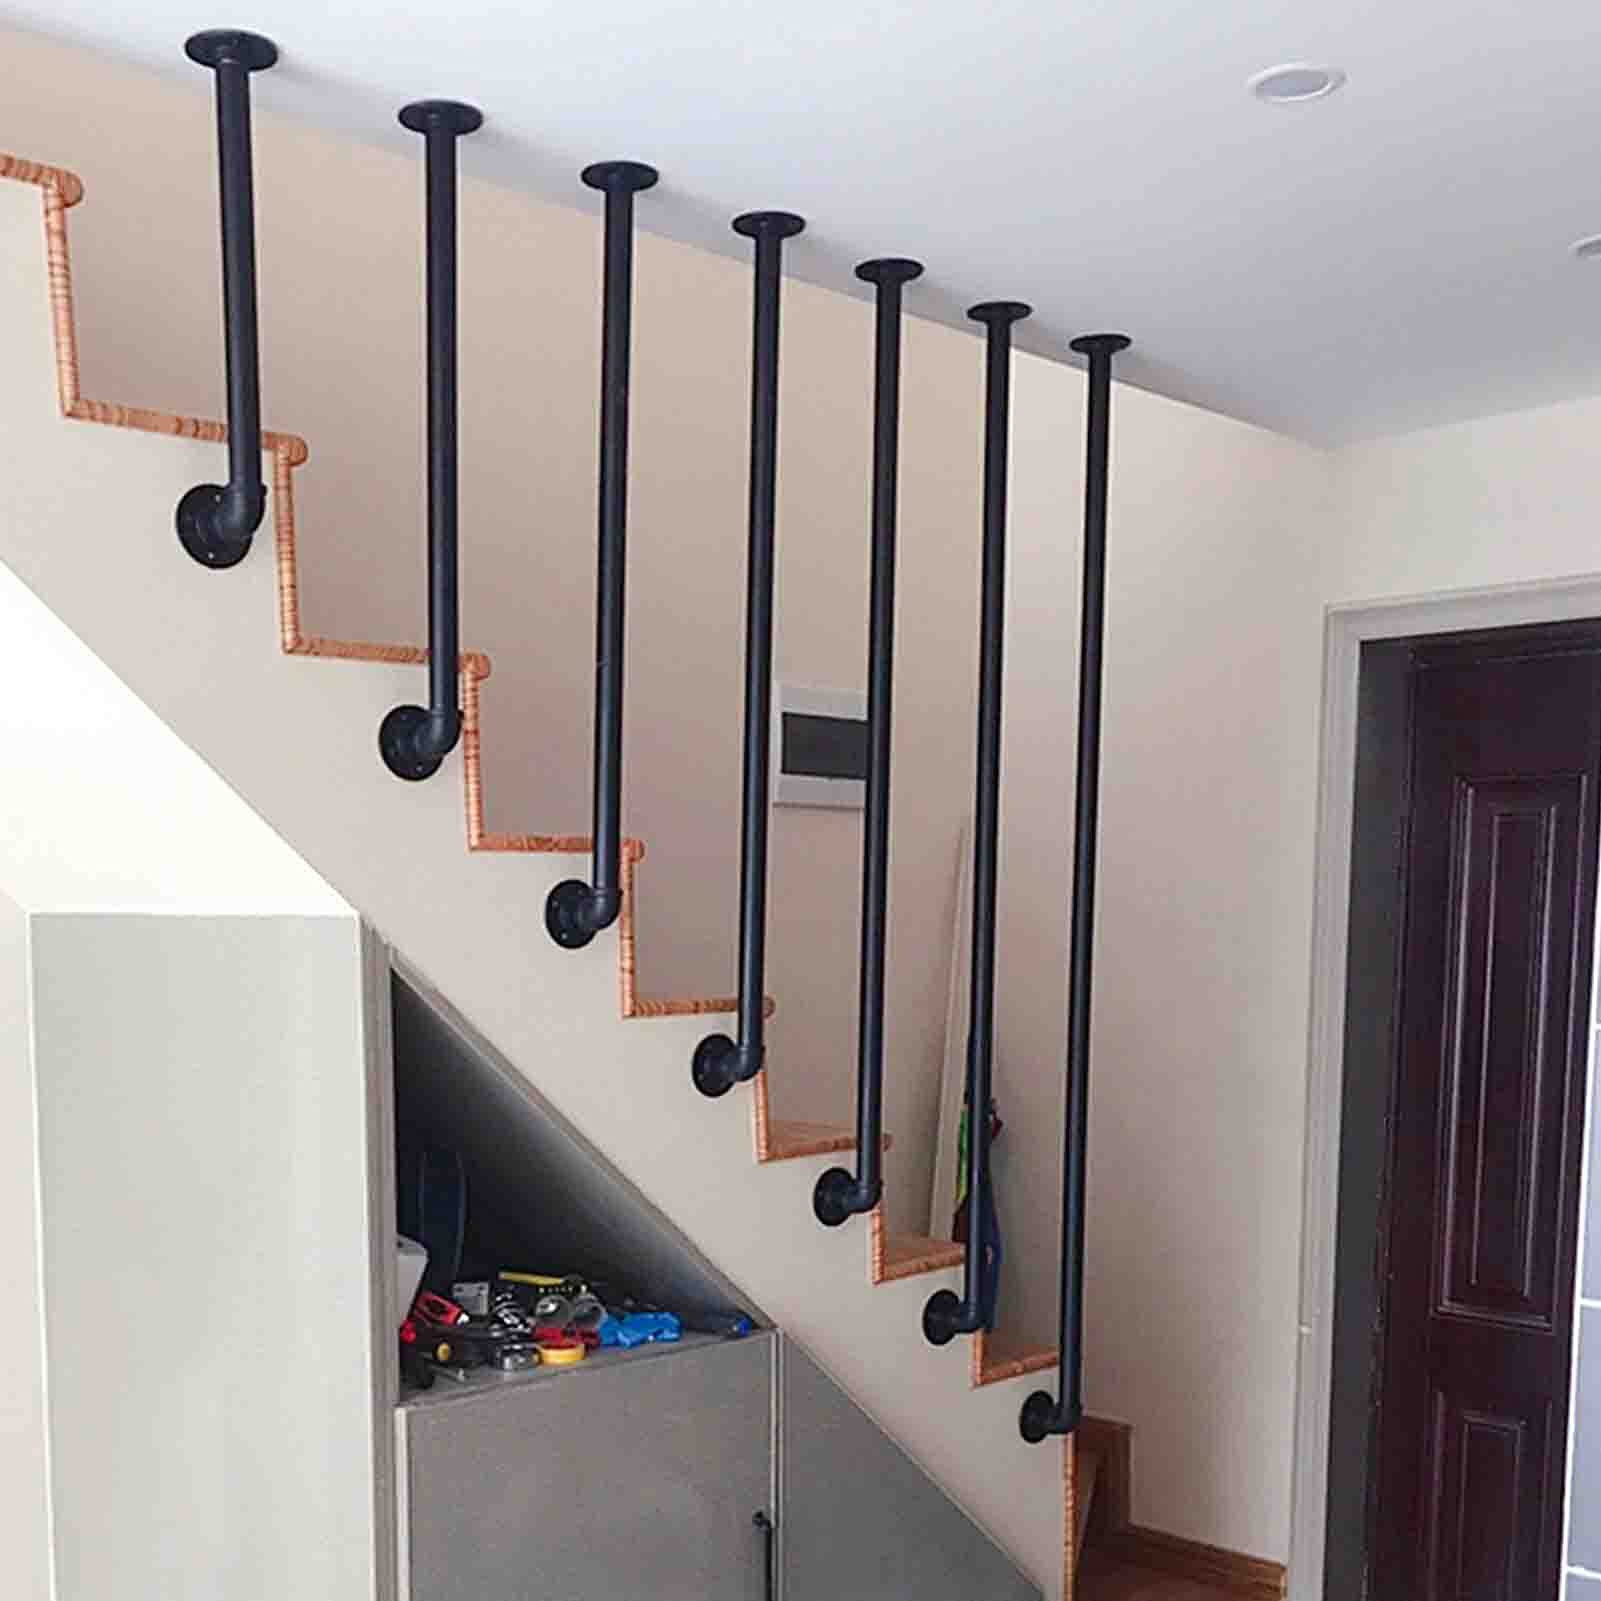 MYAOU Treppengeländer-Kit, Mattschwarz verzinktes Rohr Treppengeländer Arbeitssicherheits-Handlauf für Bar-Keller-Loft-Treppen Treppengeländer Innen, 1ft-4ft